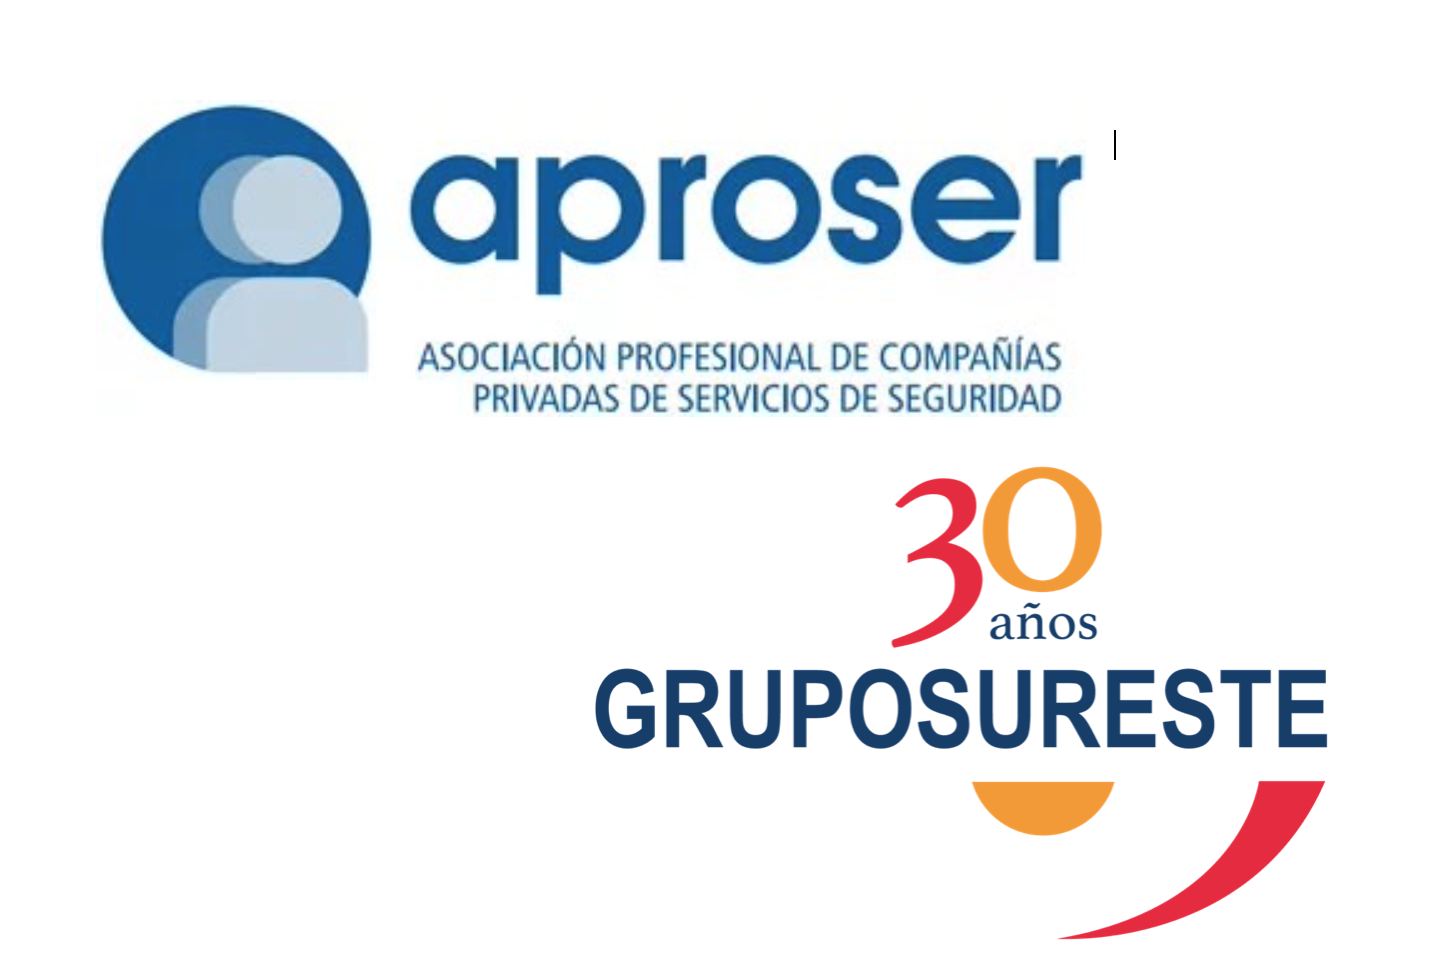 Grupo Sureste se integra en Aproser, el círculo más exclusivo de las Compañías de Servicios de Seguridad de España